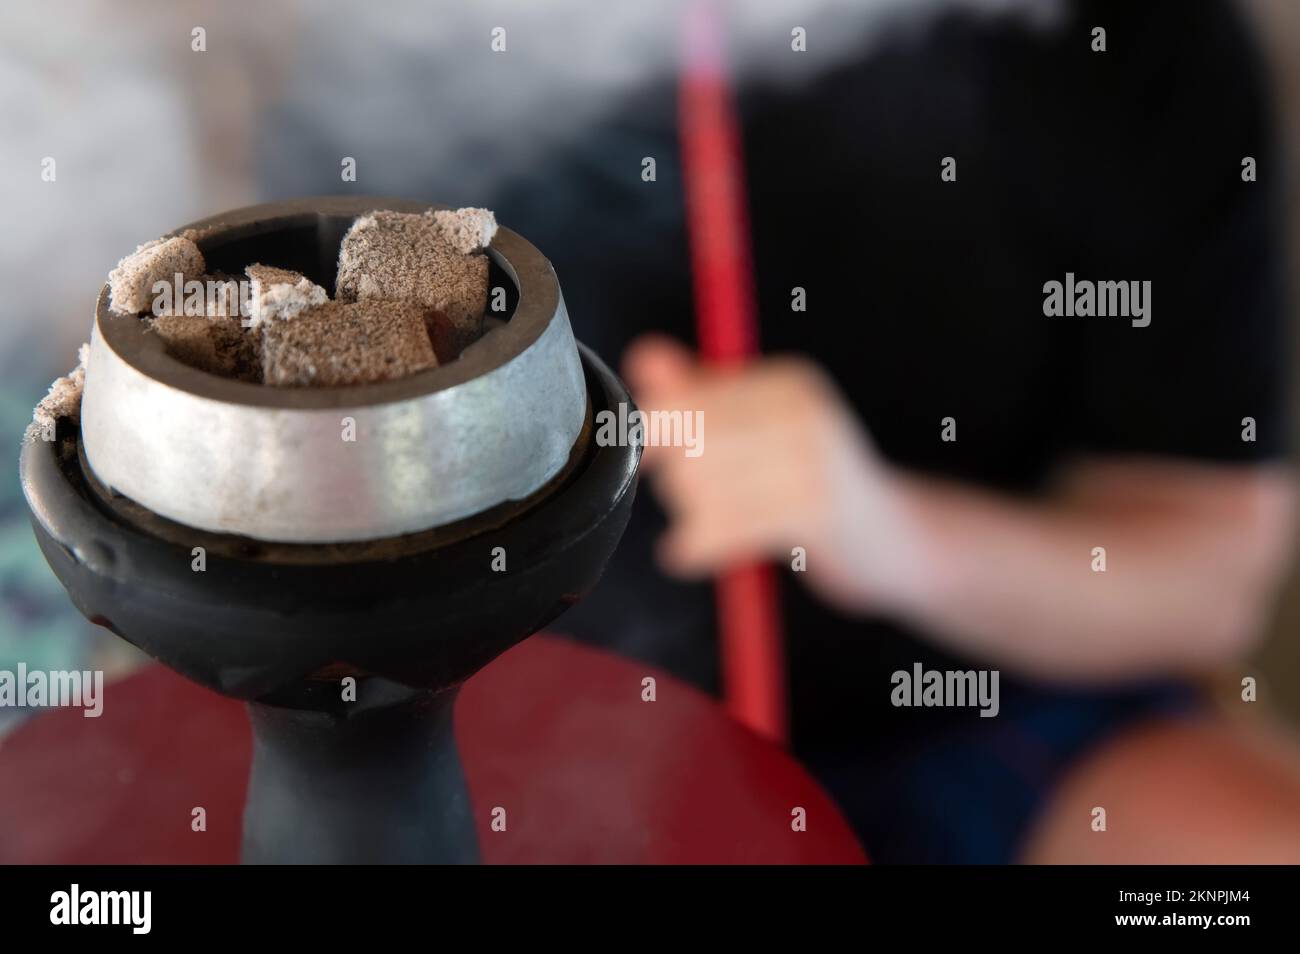 Gros plan de shisha nargua avec des charbons chauds rouges et de la fumée de respirer. Le narguilé moderne avec charbon de coco pour se détendre et la fumée de shisha Banque D'Images